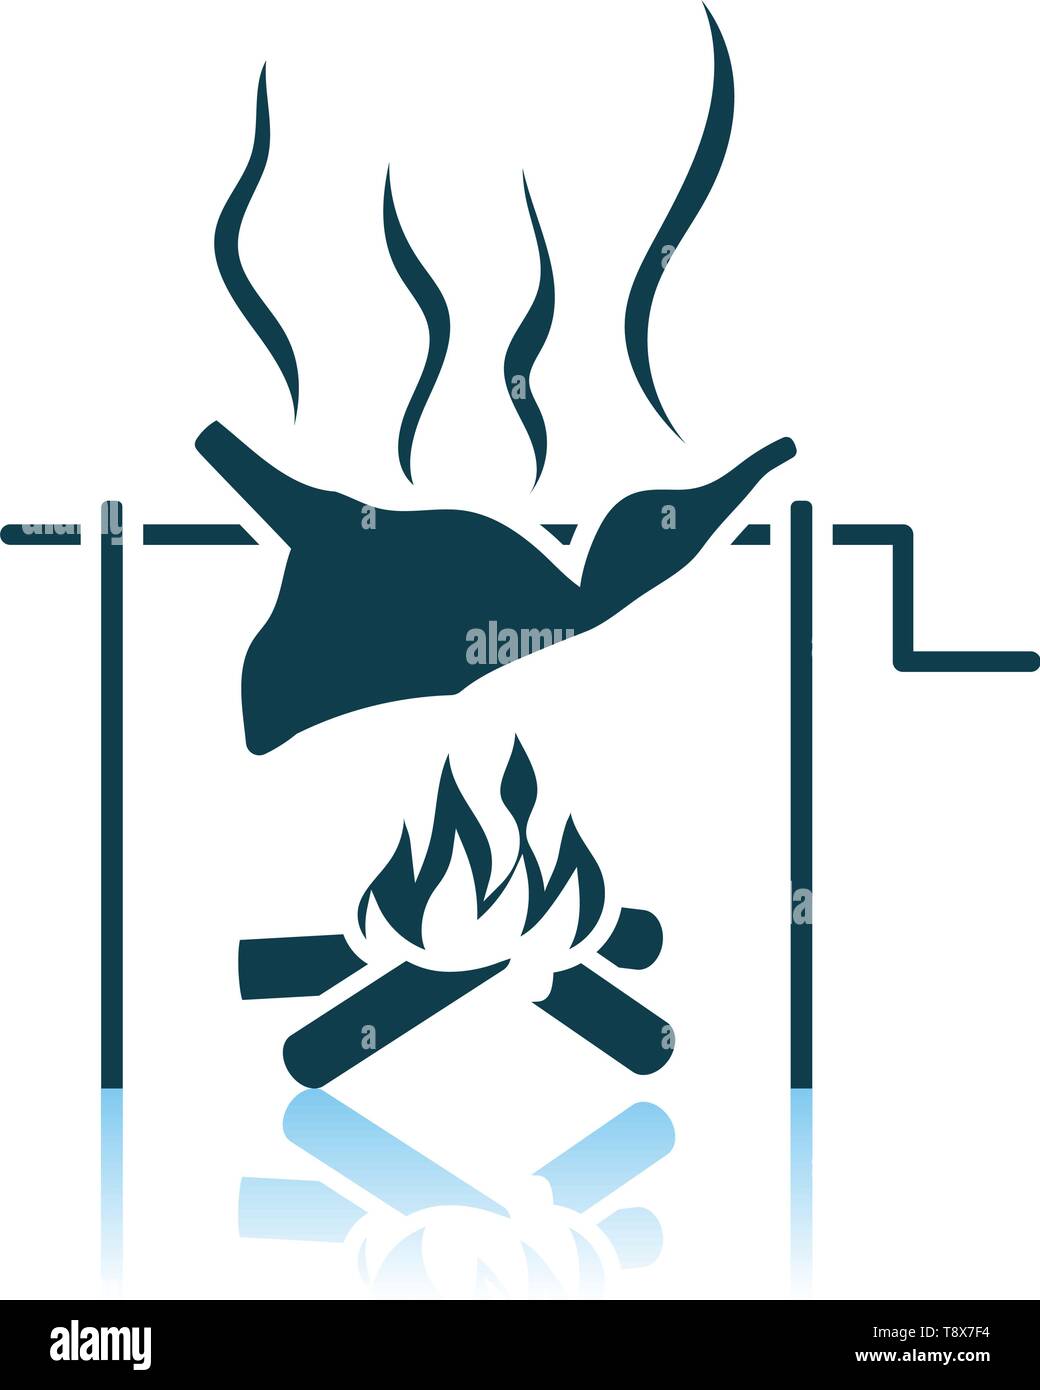 Fuego A La Parrilla Elementos De Carne, Fondo Transparente Aislado,  Ilustración 3d Ilustraciones svg, vectoriales, clip art vectorizado libre  de derechos. Image 71808846